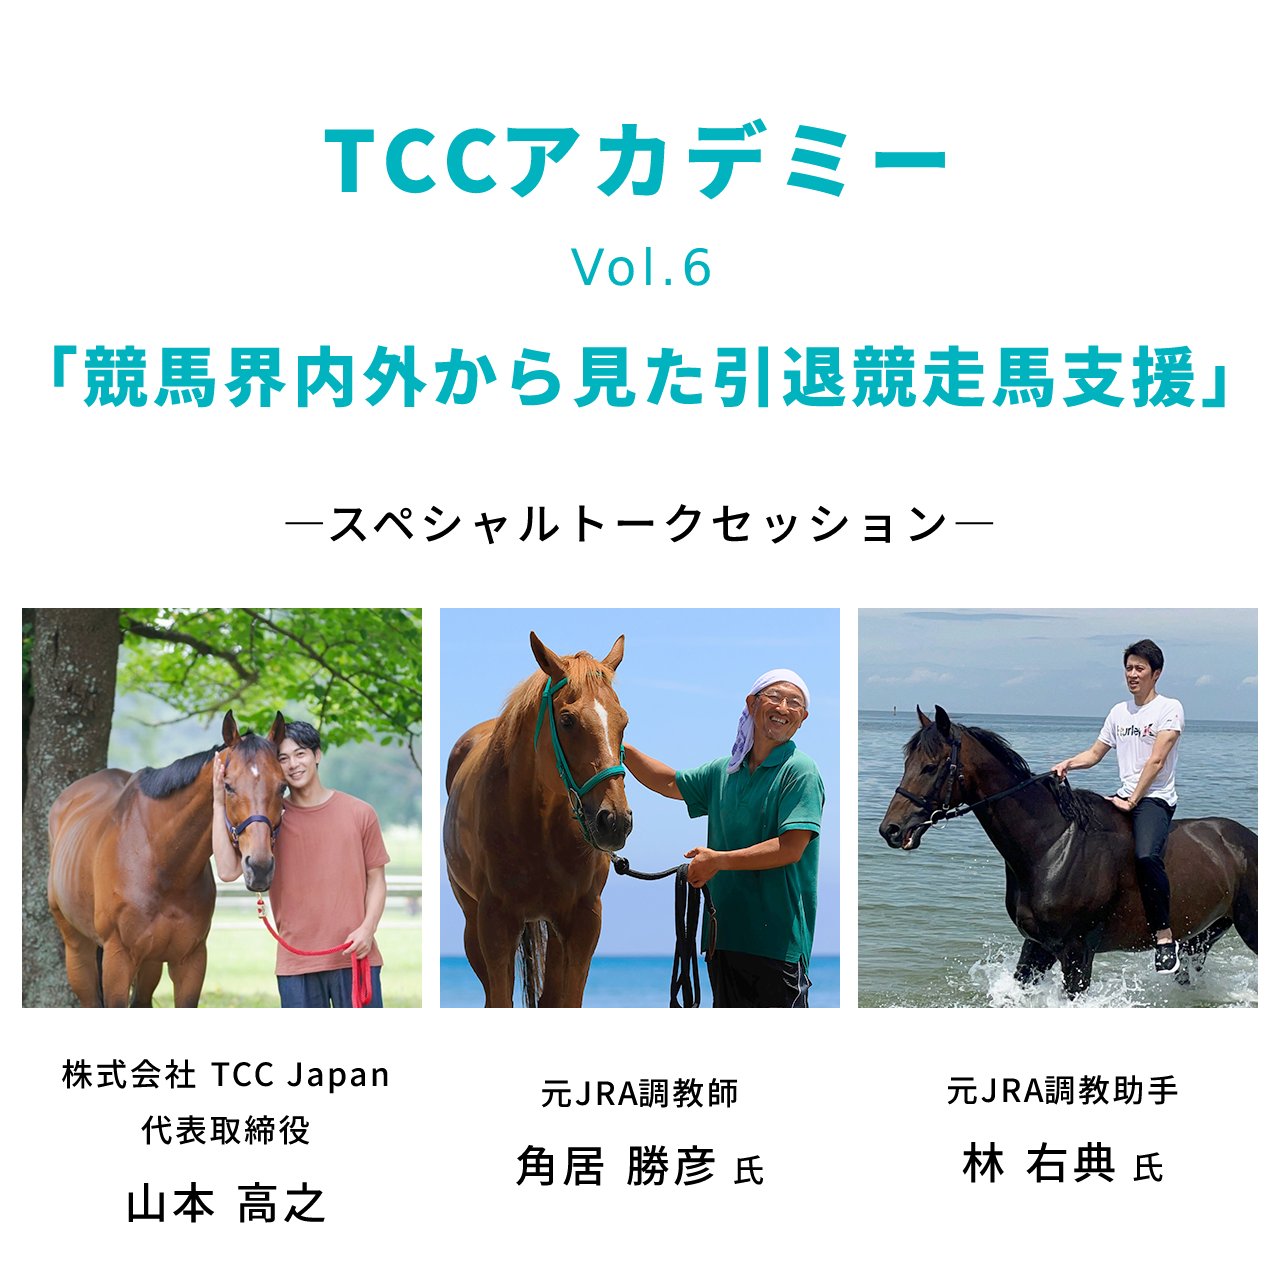 【受付開始】TCCアカデミー vol.6「競馬界内外から見た引退競走馬支援」